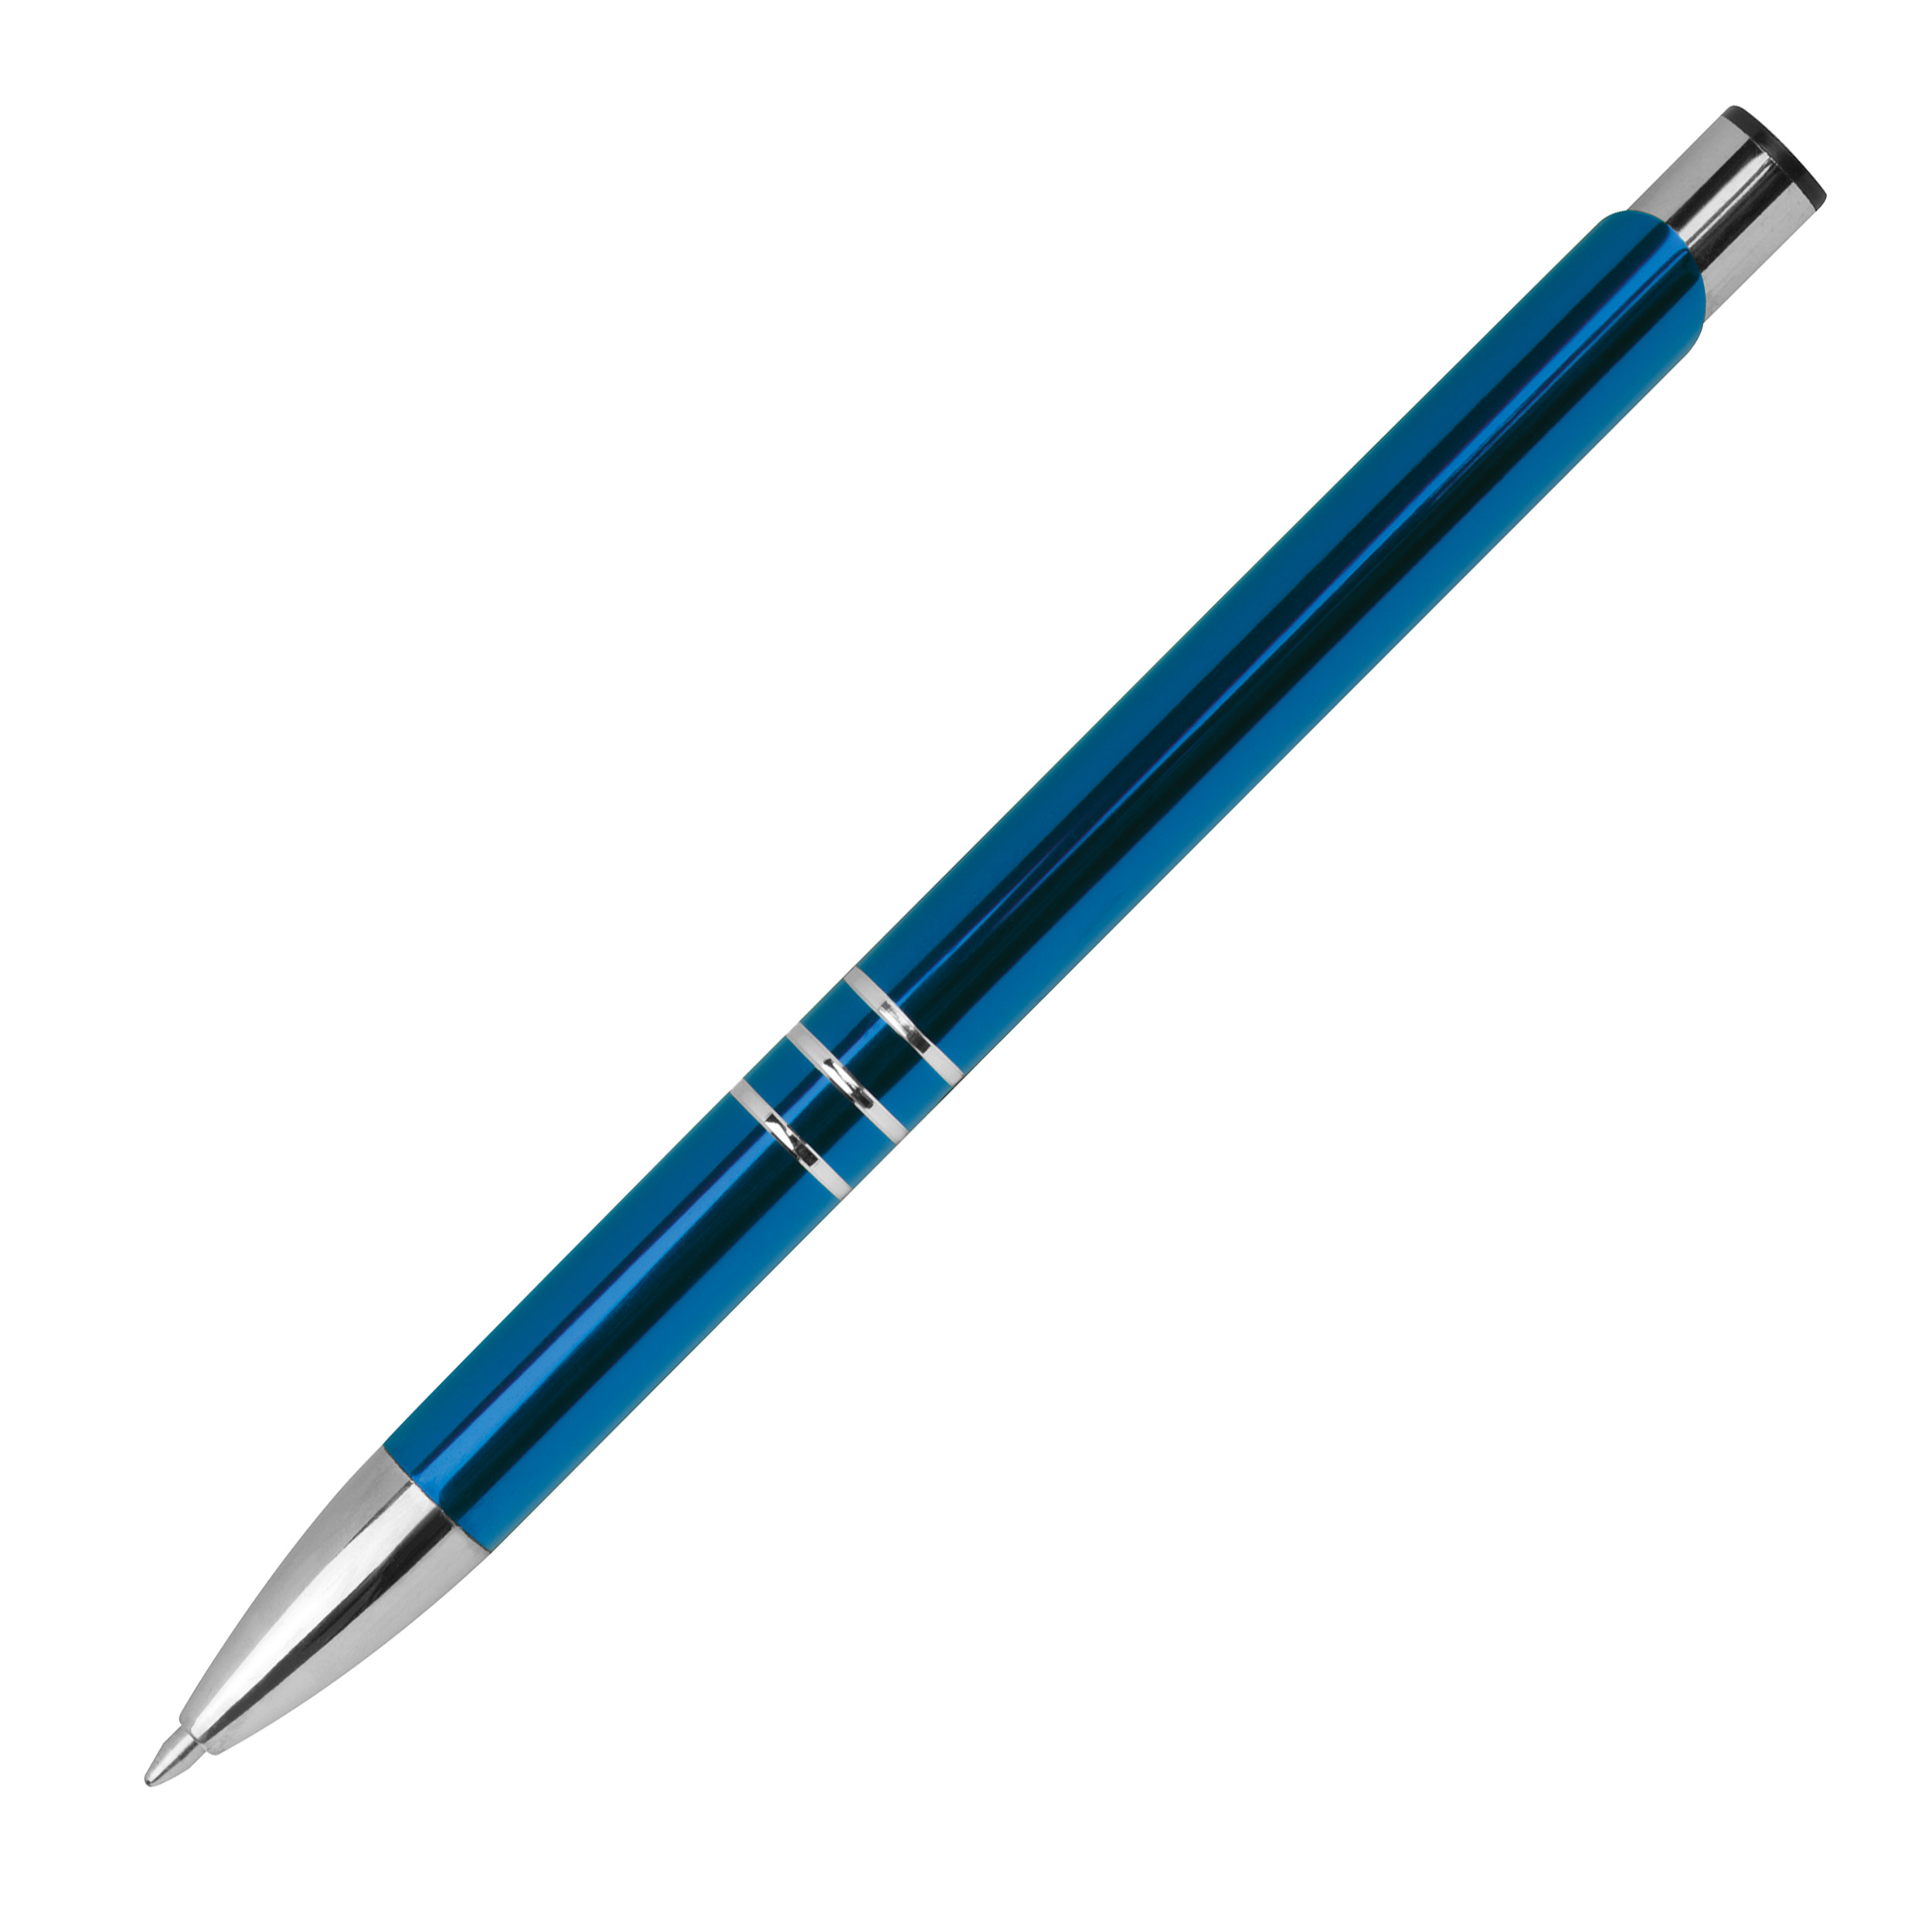 Schreibset bestehend aus einem Kugelschreiber und einem Rollerball